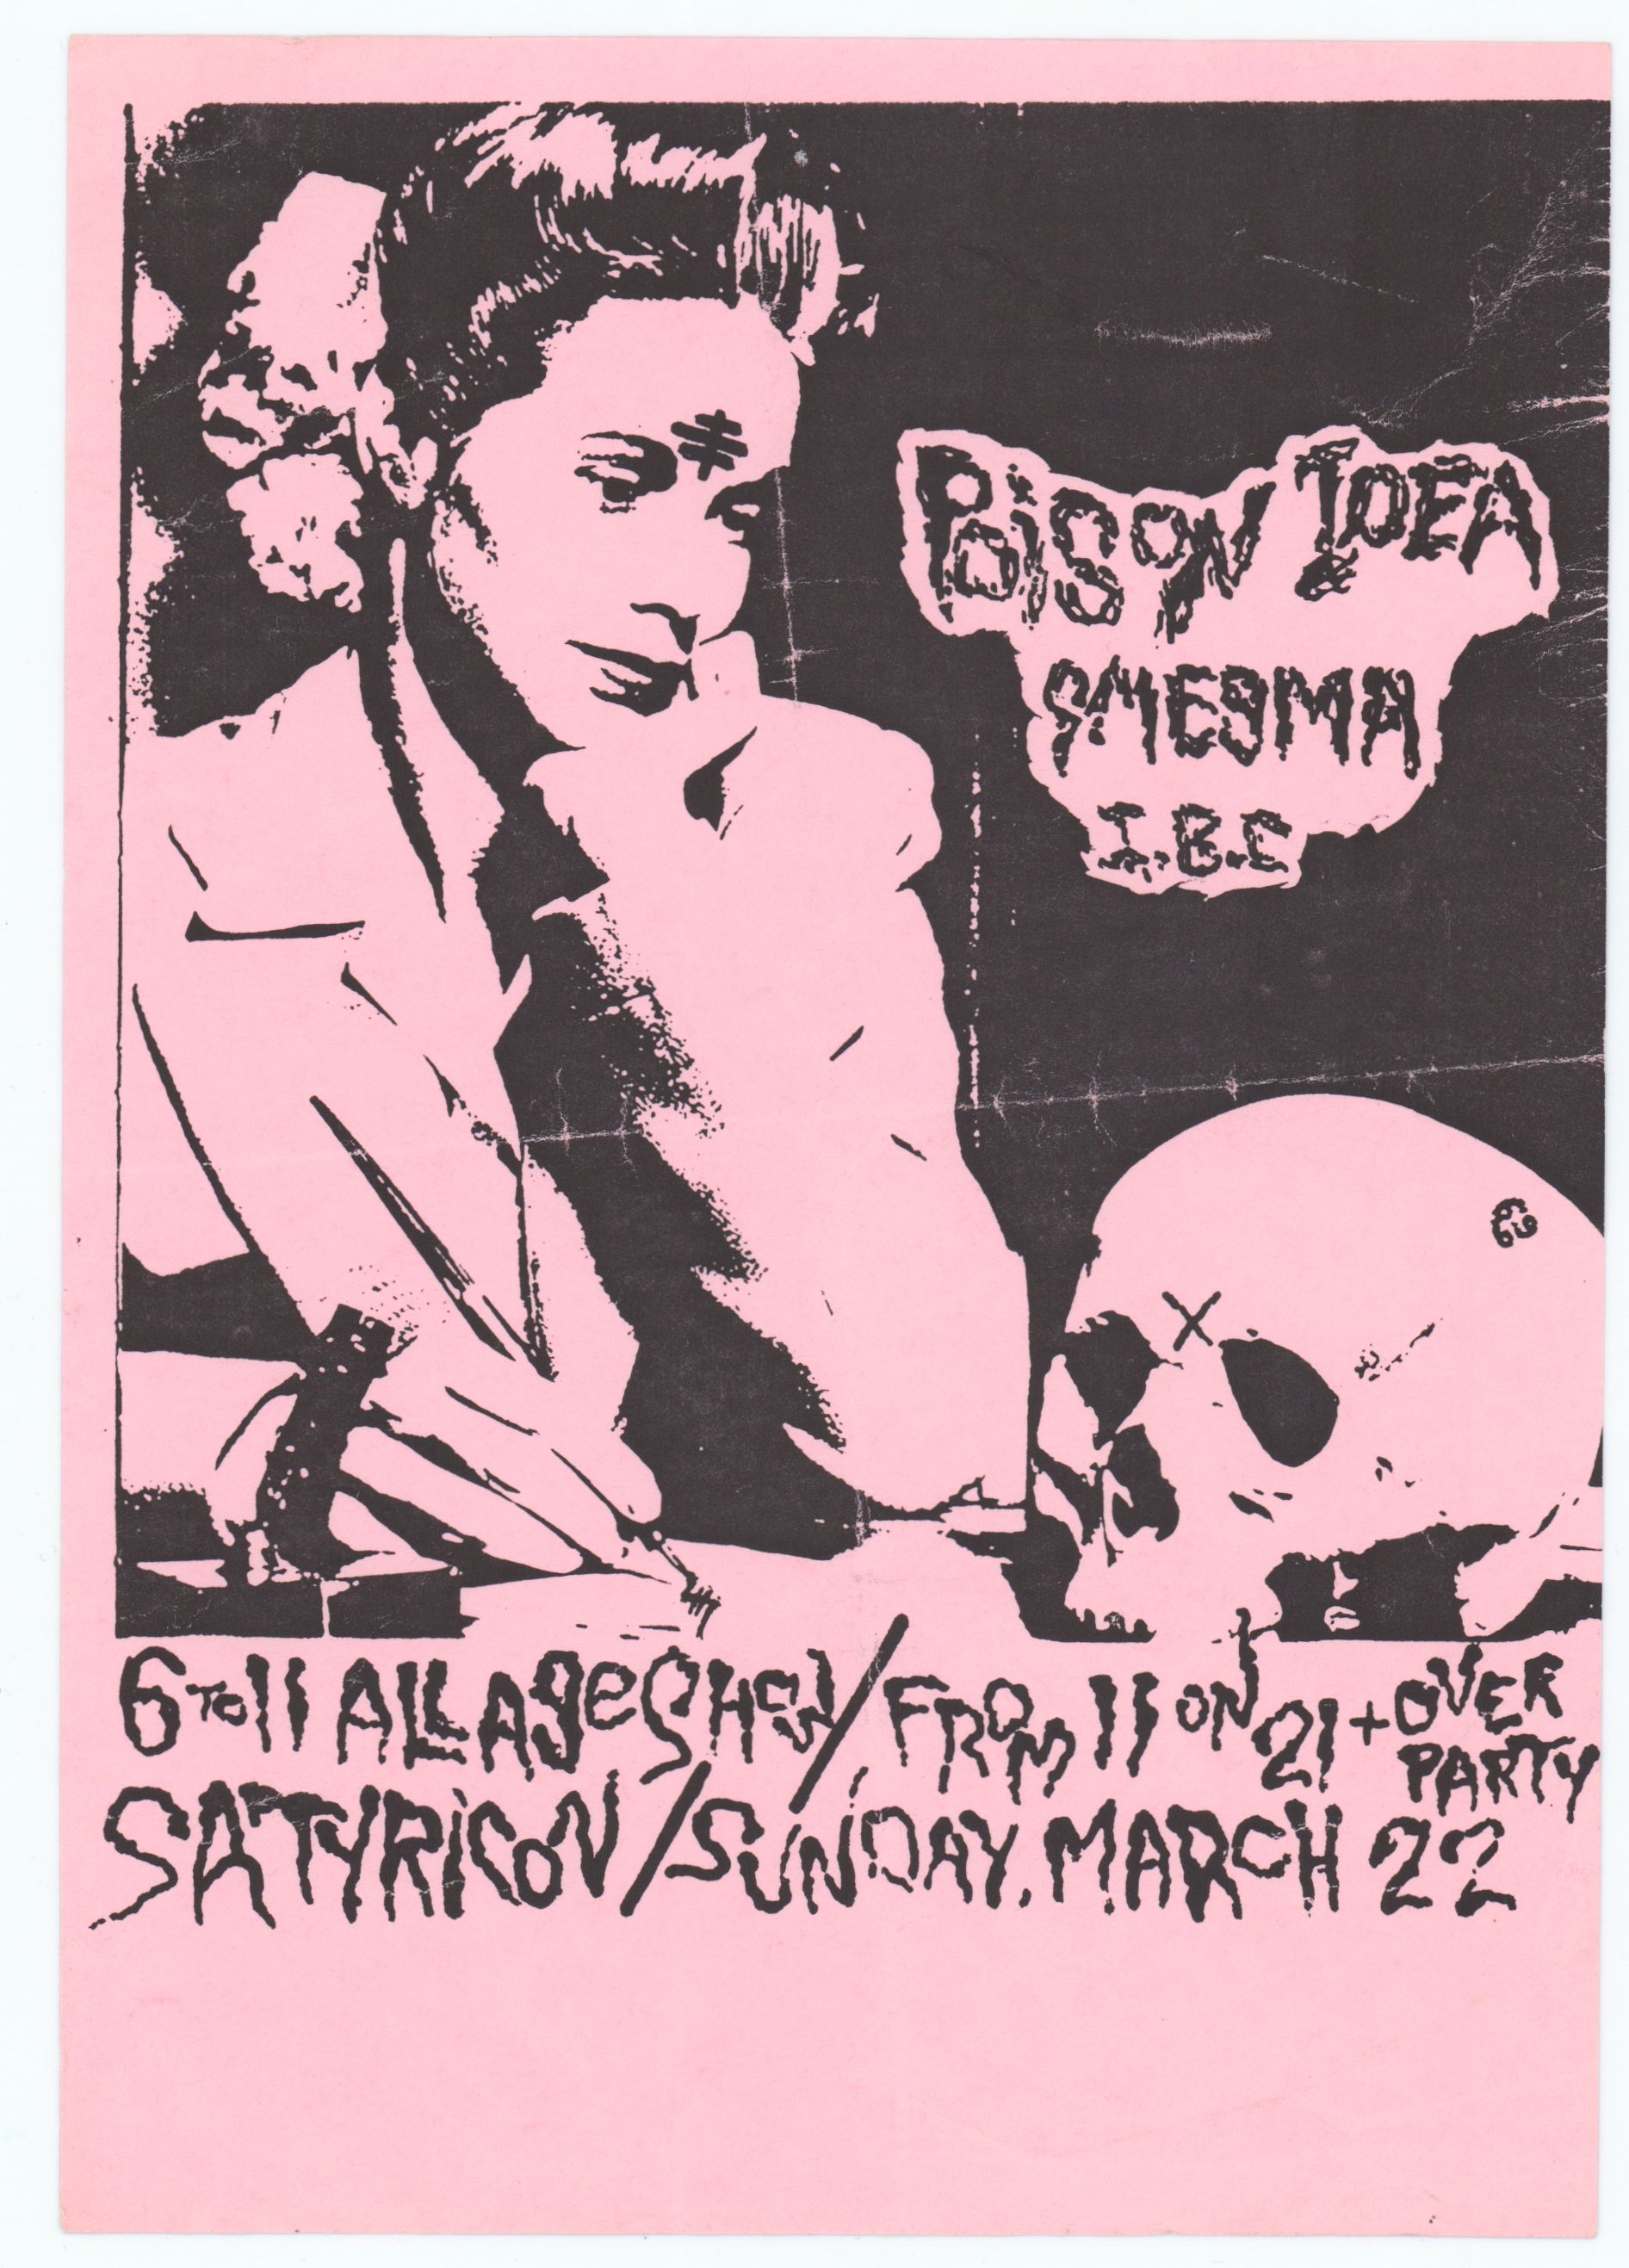 Smegma Satyricon 1000-03-22 1000 Satyricon Mar 22 Concert Poster